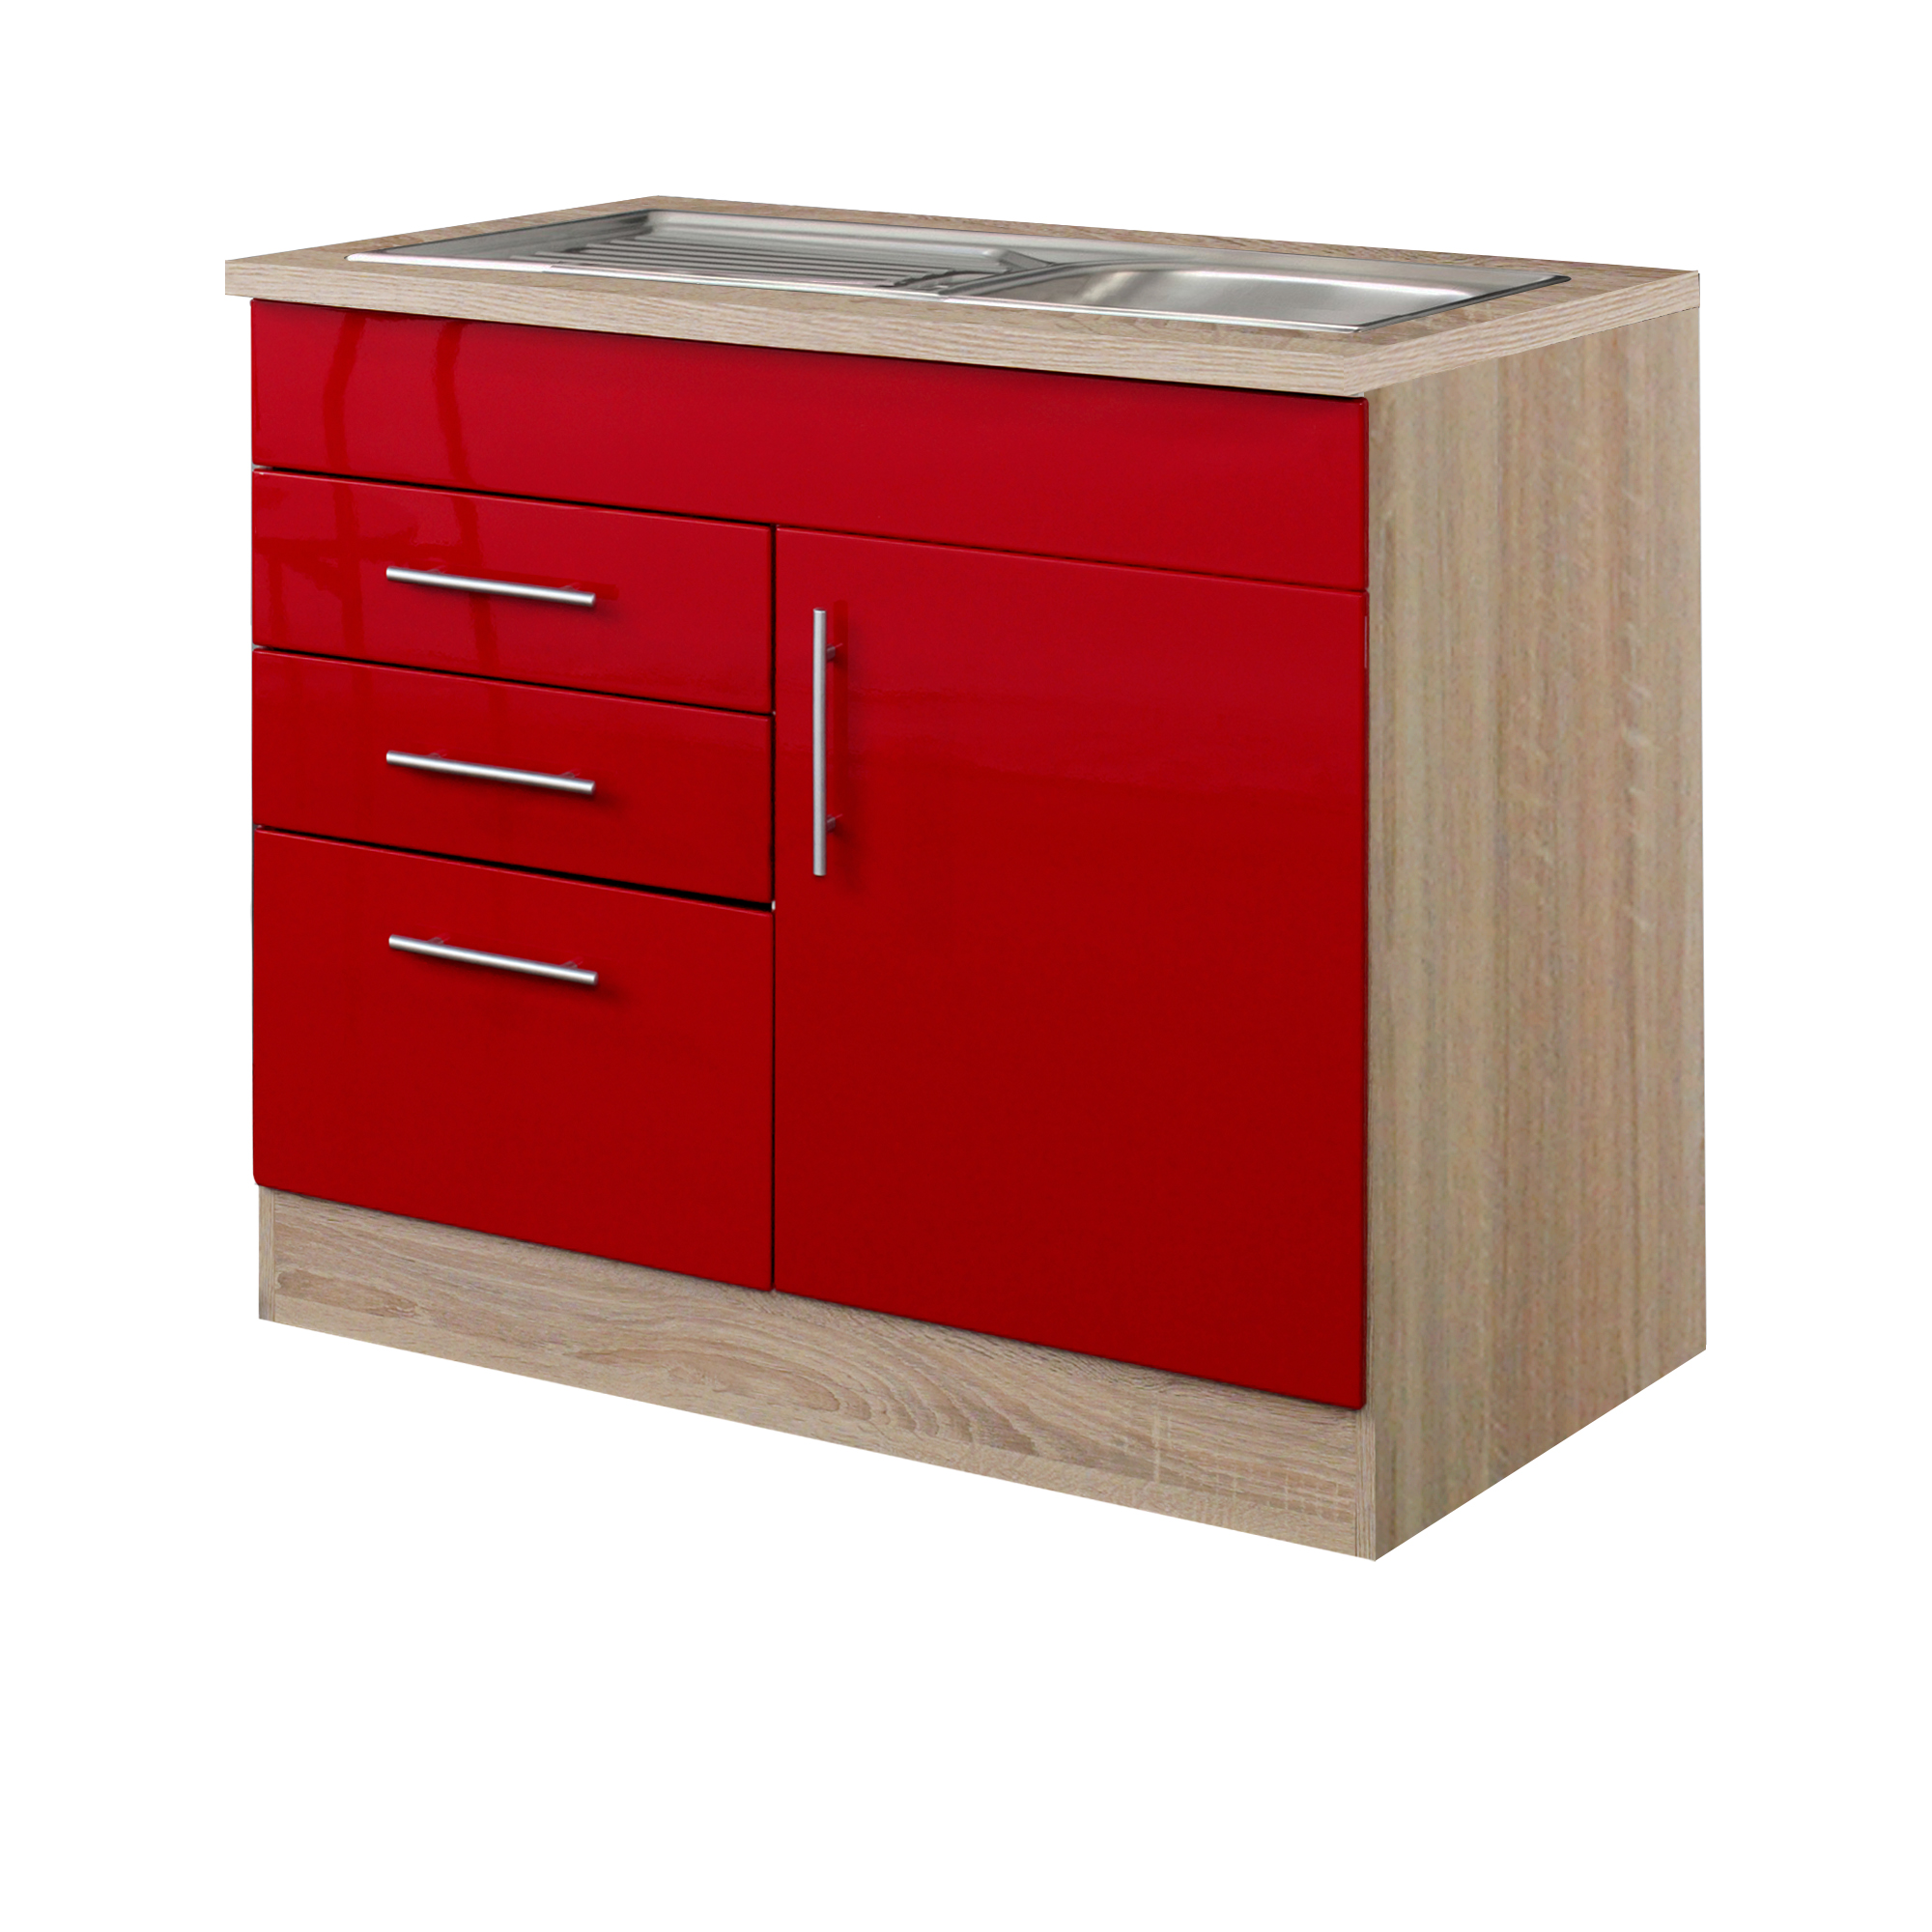 Küchen-Spülenschrank BERLIN - 1-türig, 1 Auszug, 2 Schubladen - Breite 100  cm, Tiefe 60 cm - Hochglanz Rot / Eiche Sonoma